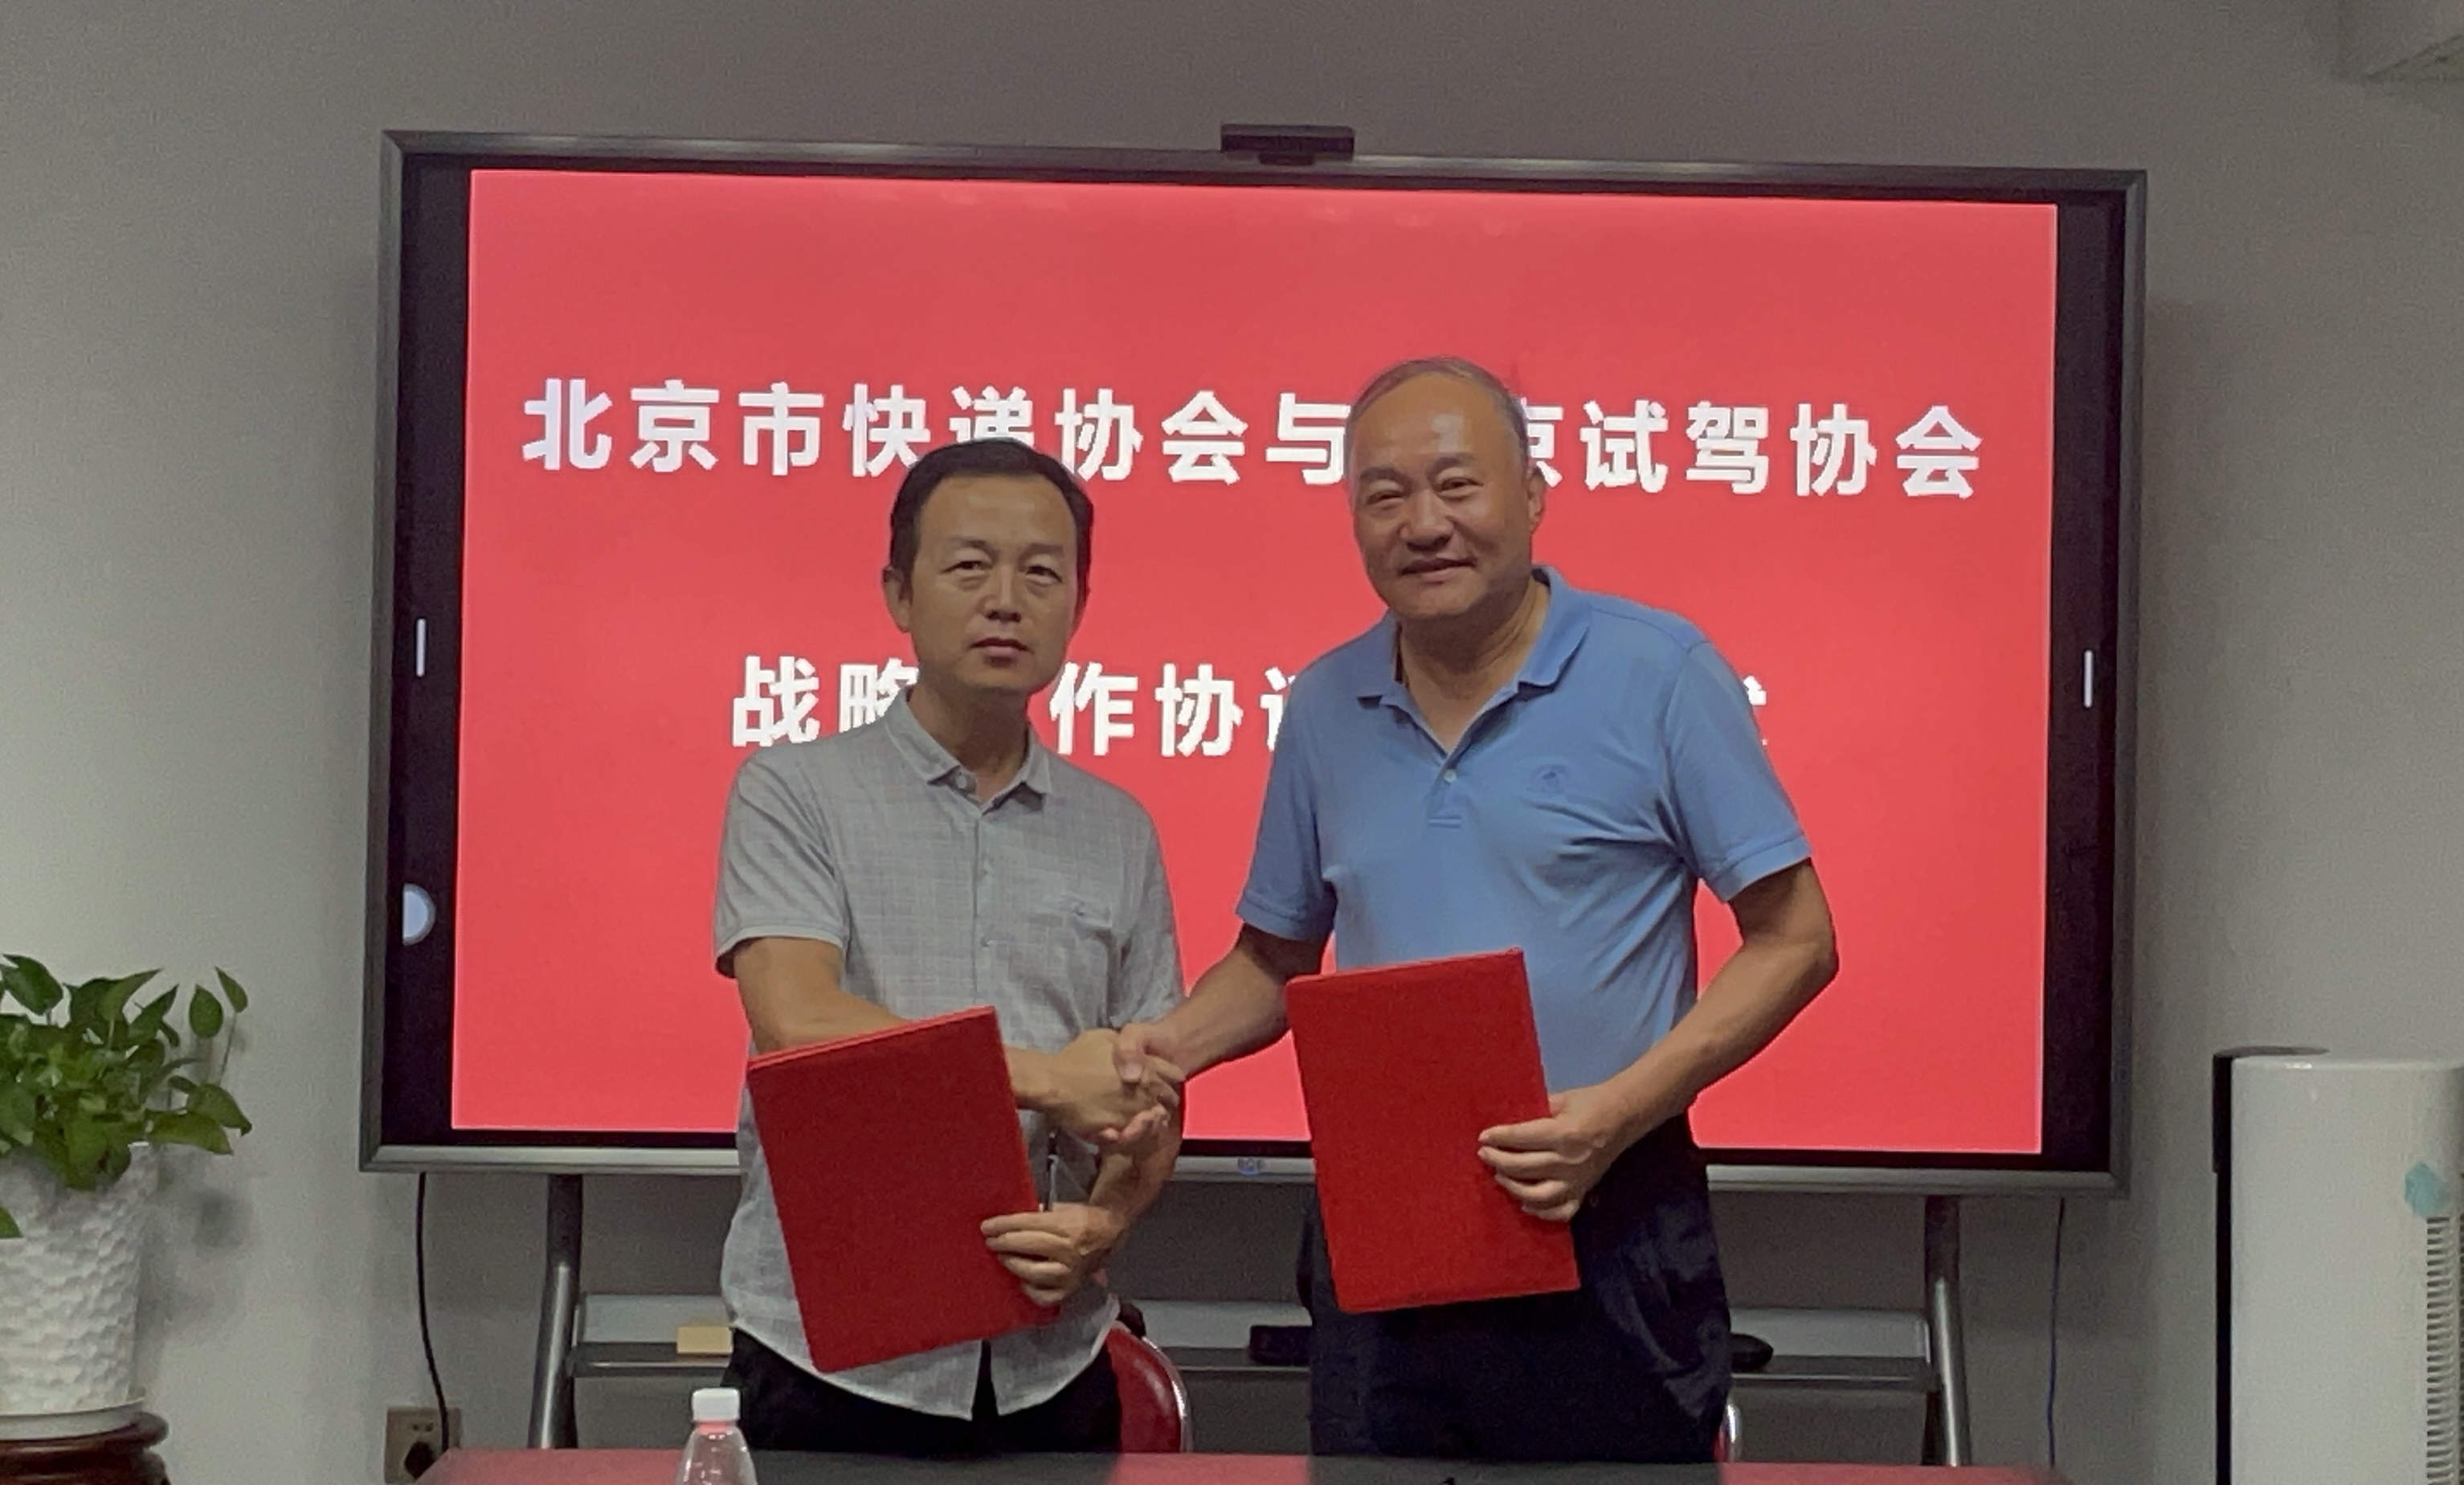 北京市快递协会与北京汽车试驾协会签署战略合作协议